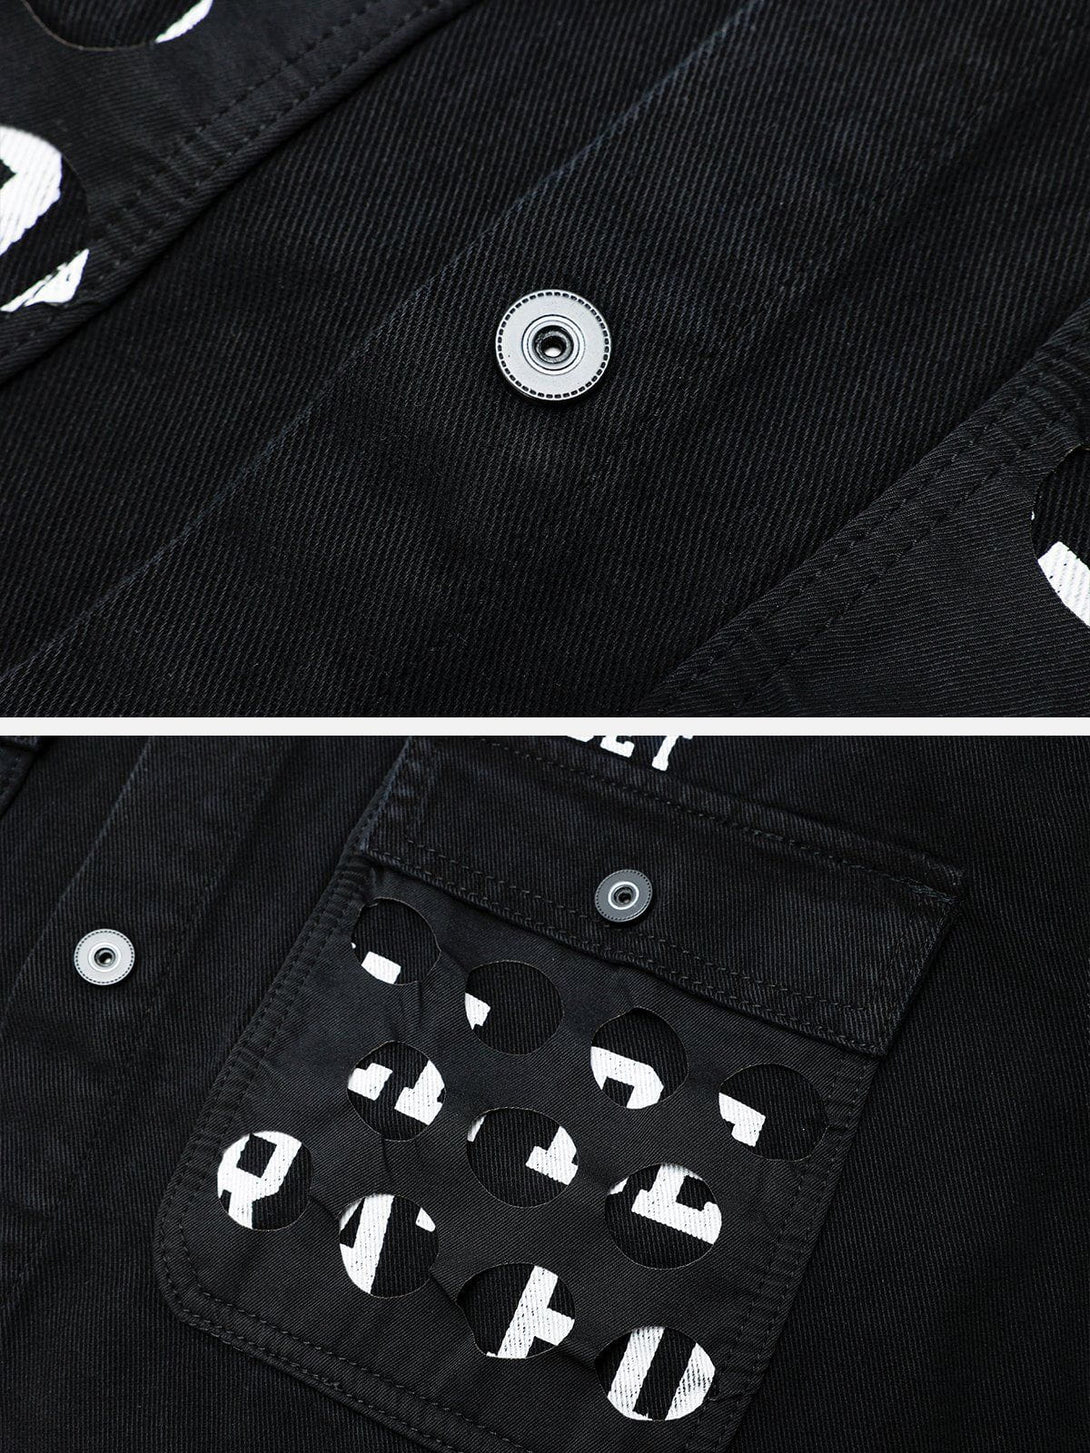 Levefly - Vintage Big Pocket Letter Denim Jacket - Streetwear Fashion - levefly.com